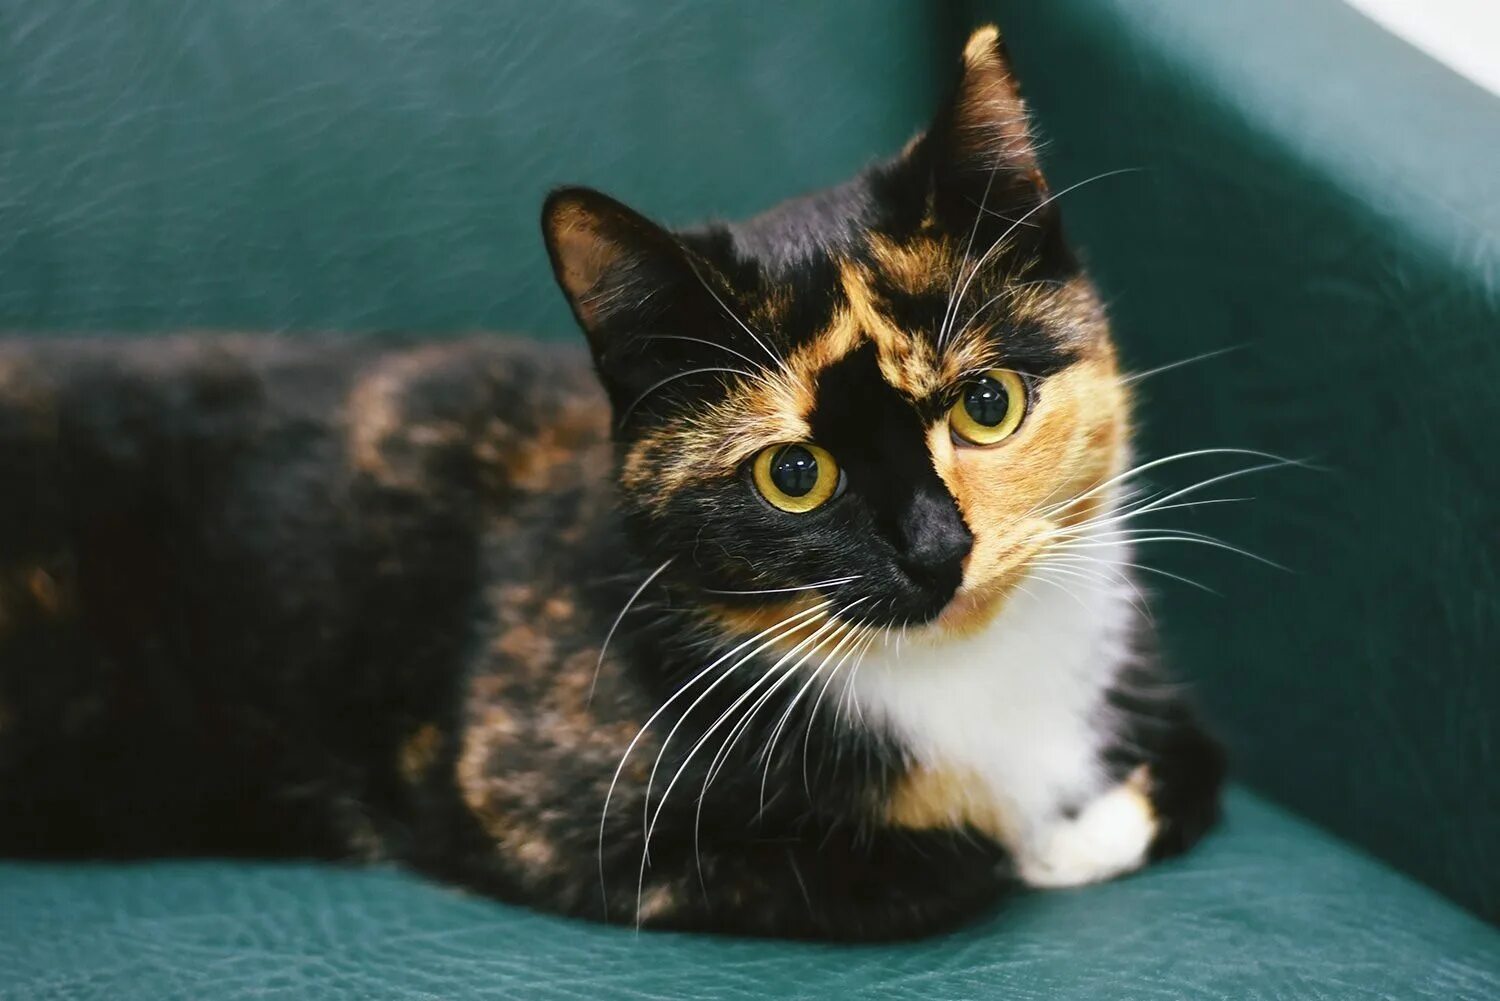 Американская короткошерстная кошка черепаховая. Сибирская кошка трехцветная короткошерстная. Черепаховая кошка Калико. Американская короткошерстная кошка трехцветная. Черепаховый цвет